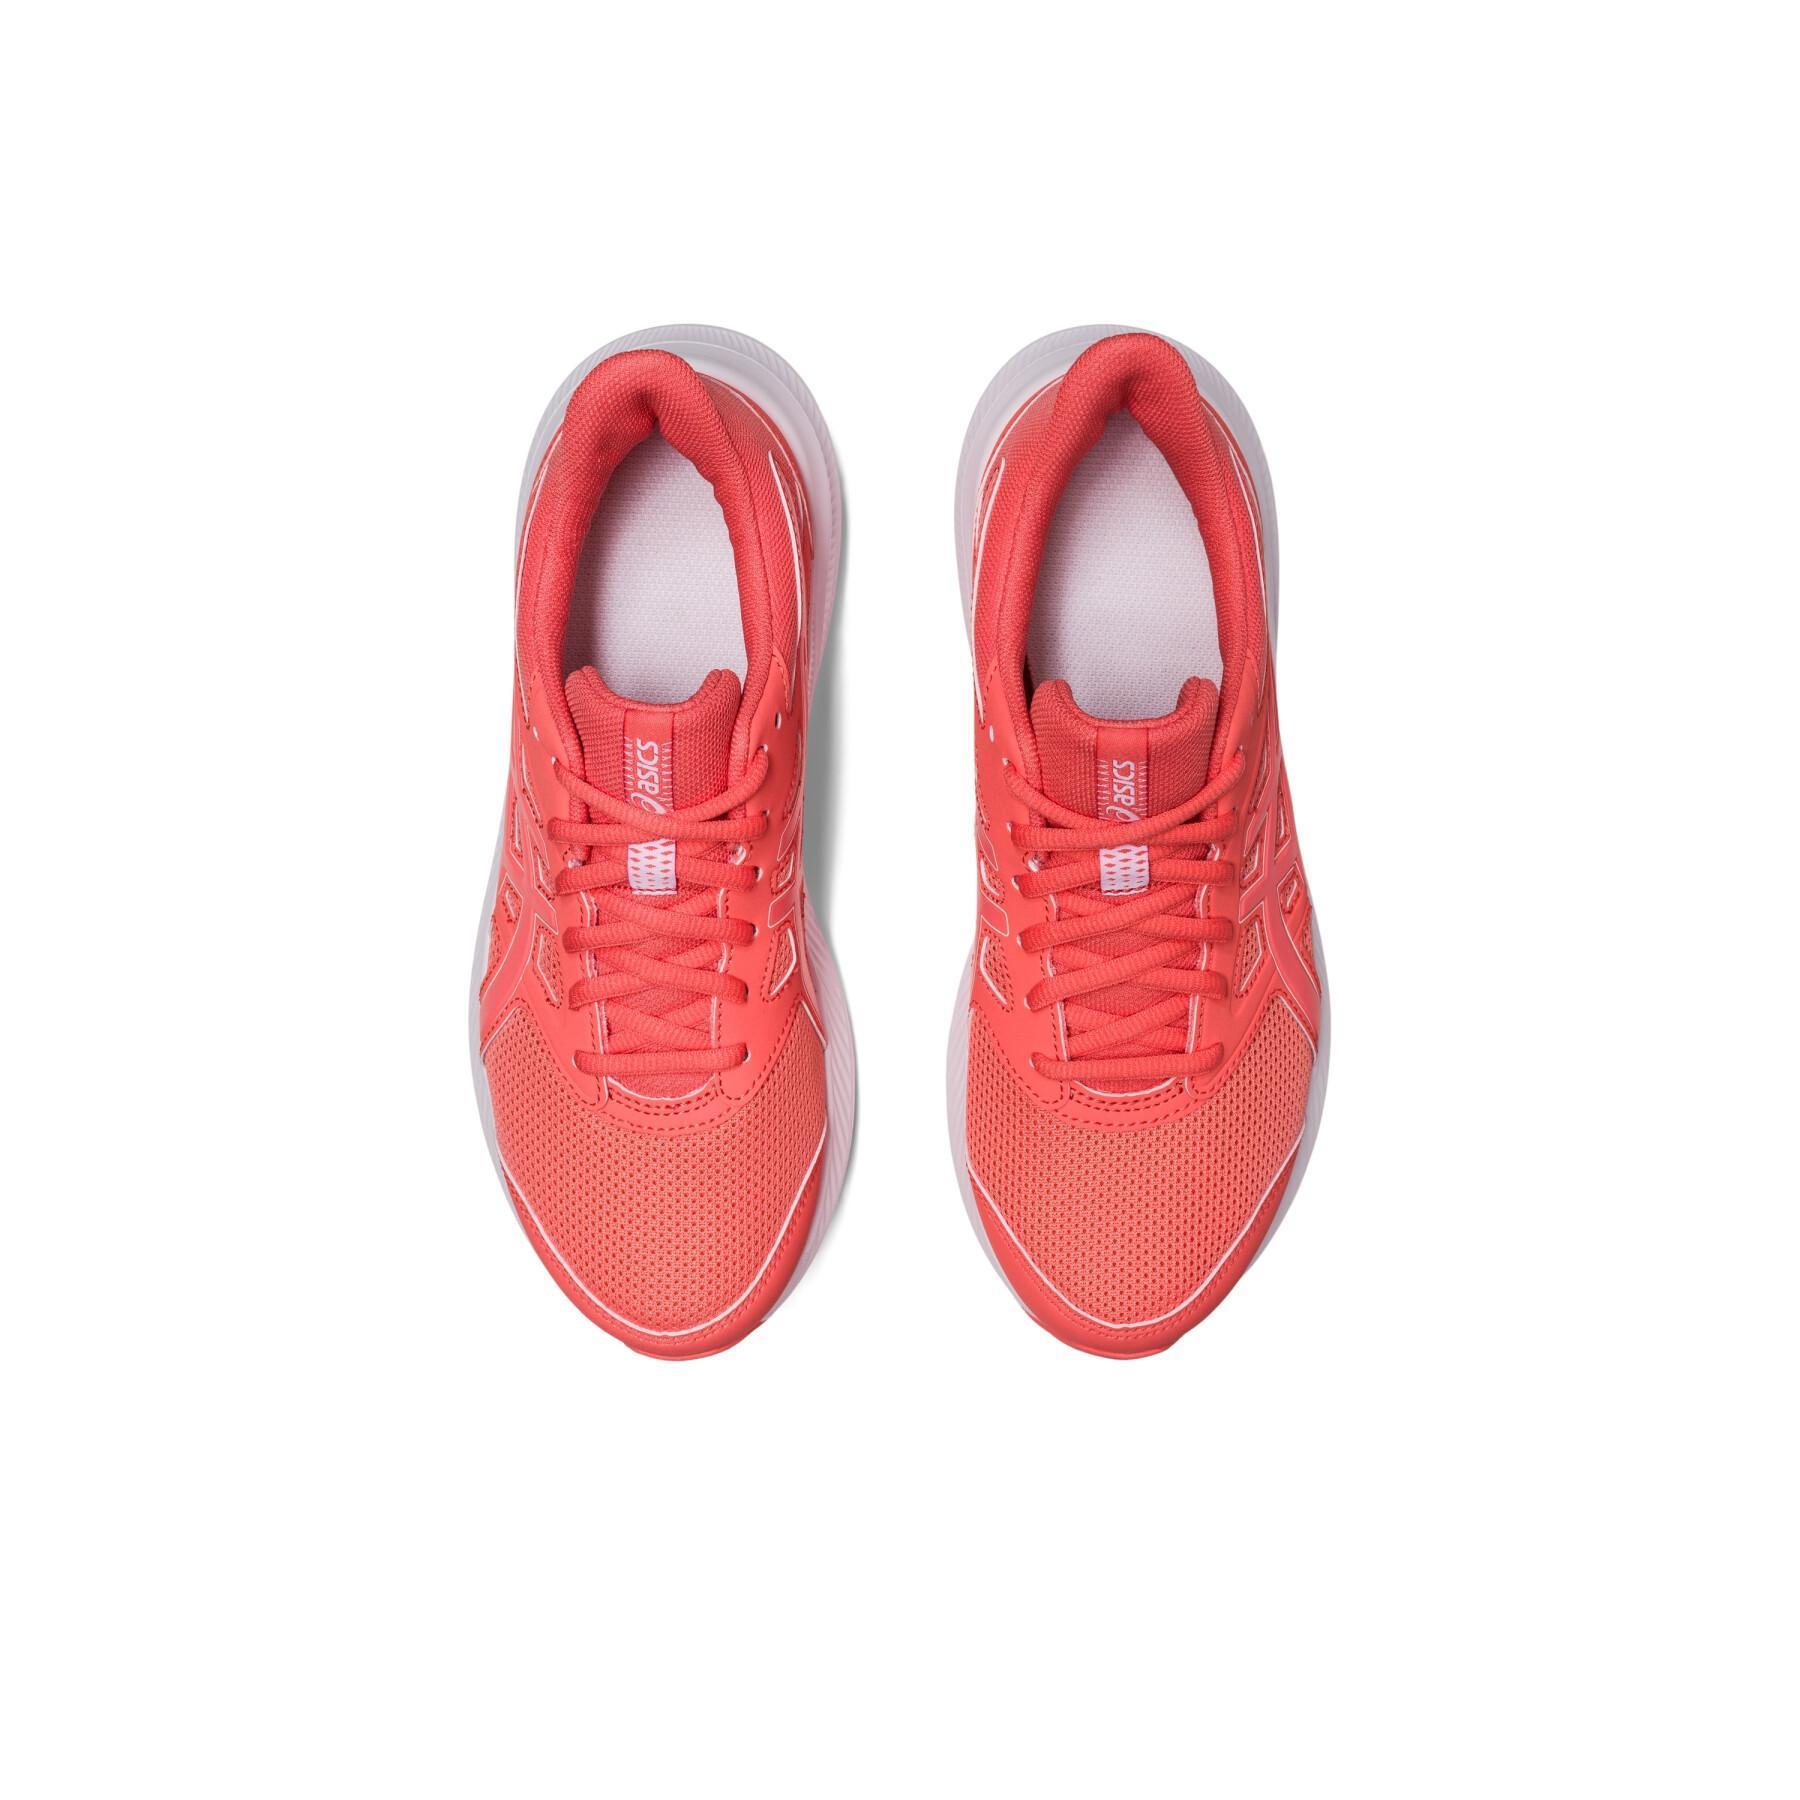 Women's running shoes Asics Jolt 4